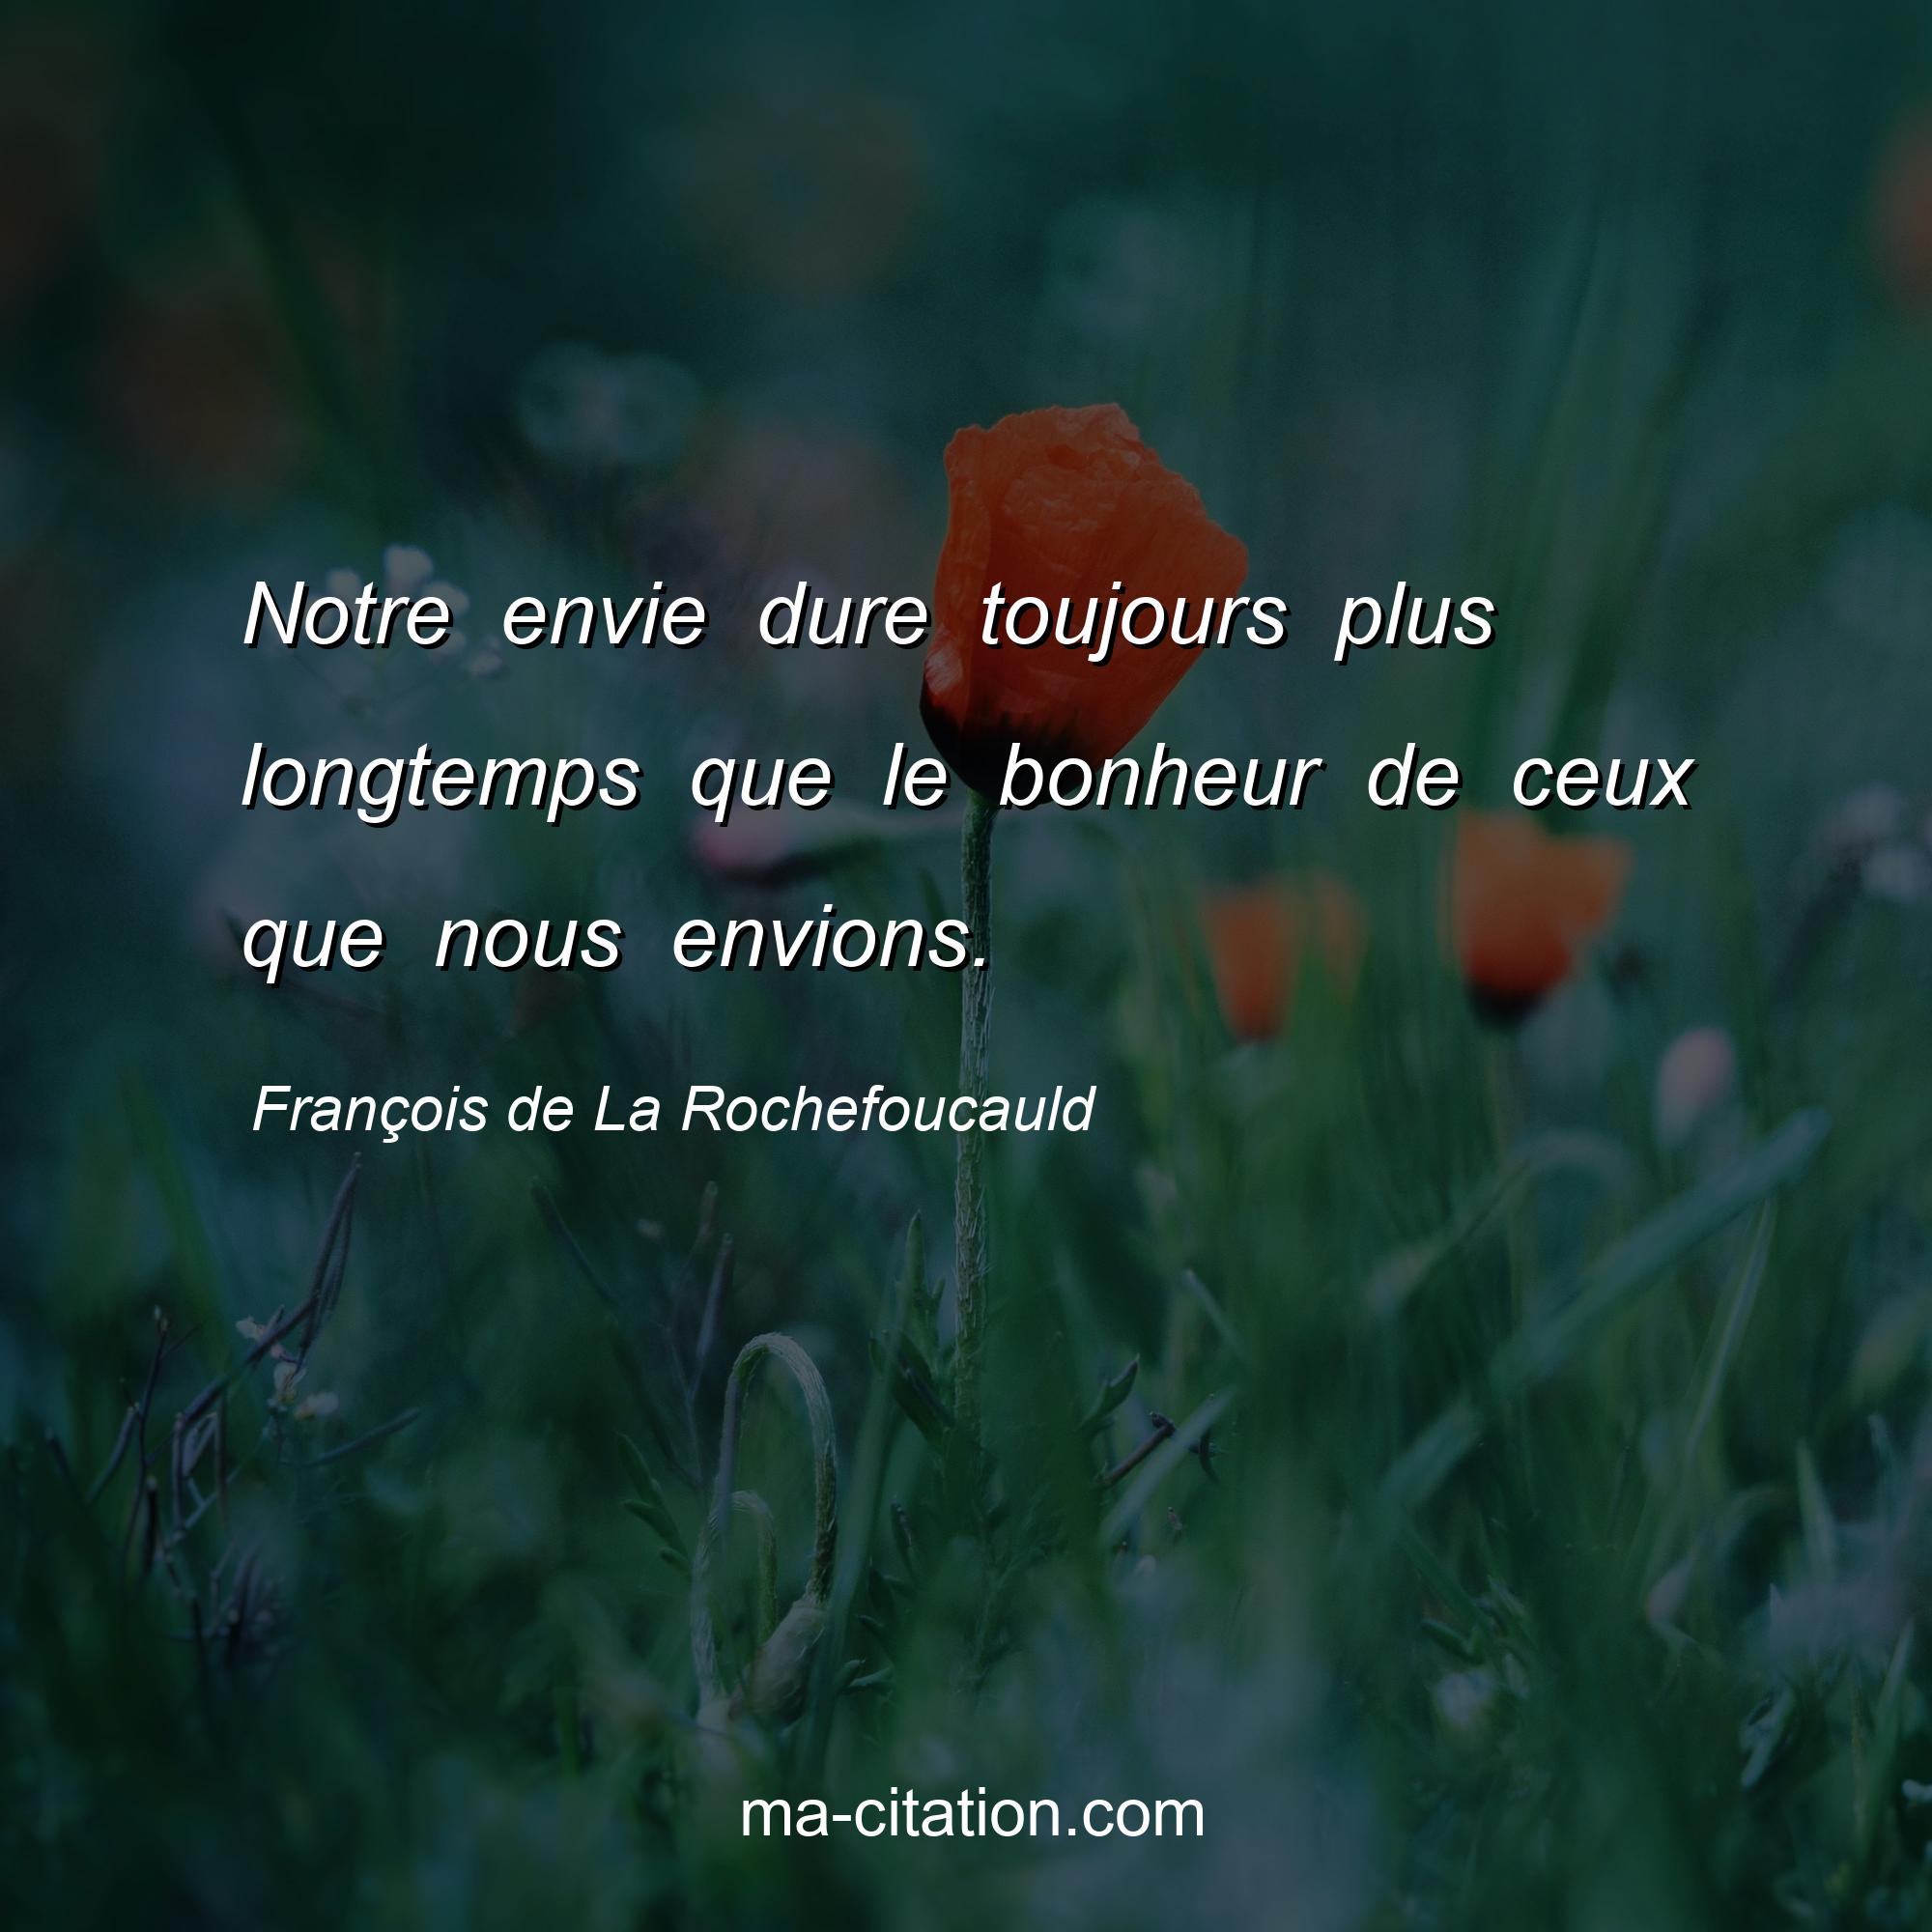 François de La Rochefoucauld : Notre envie dure toujours plus longtemps que le bonheur de ceux que nous envions.